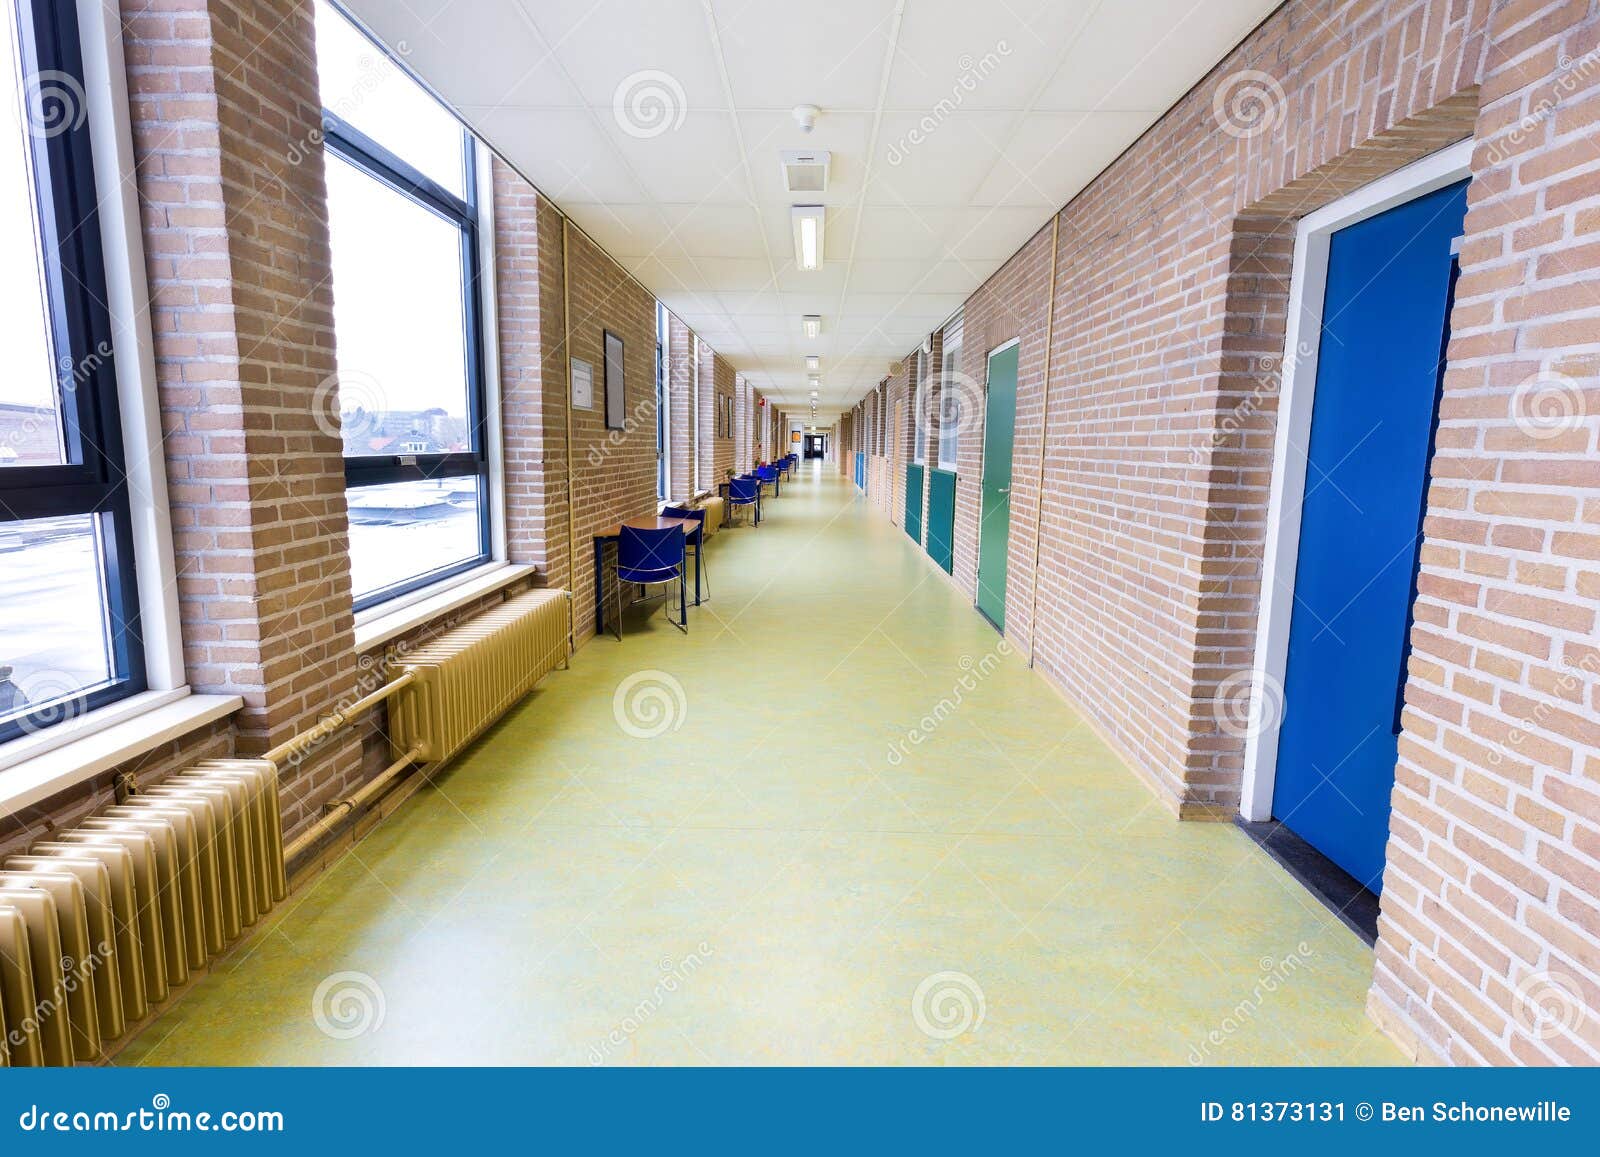 long empty corridor in high school building